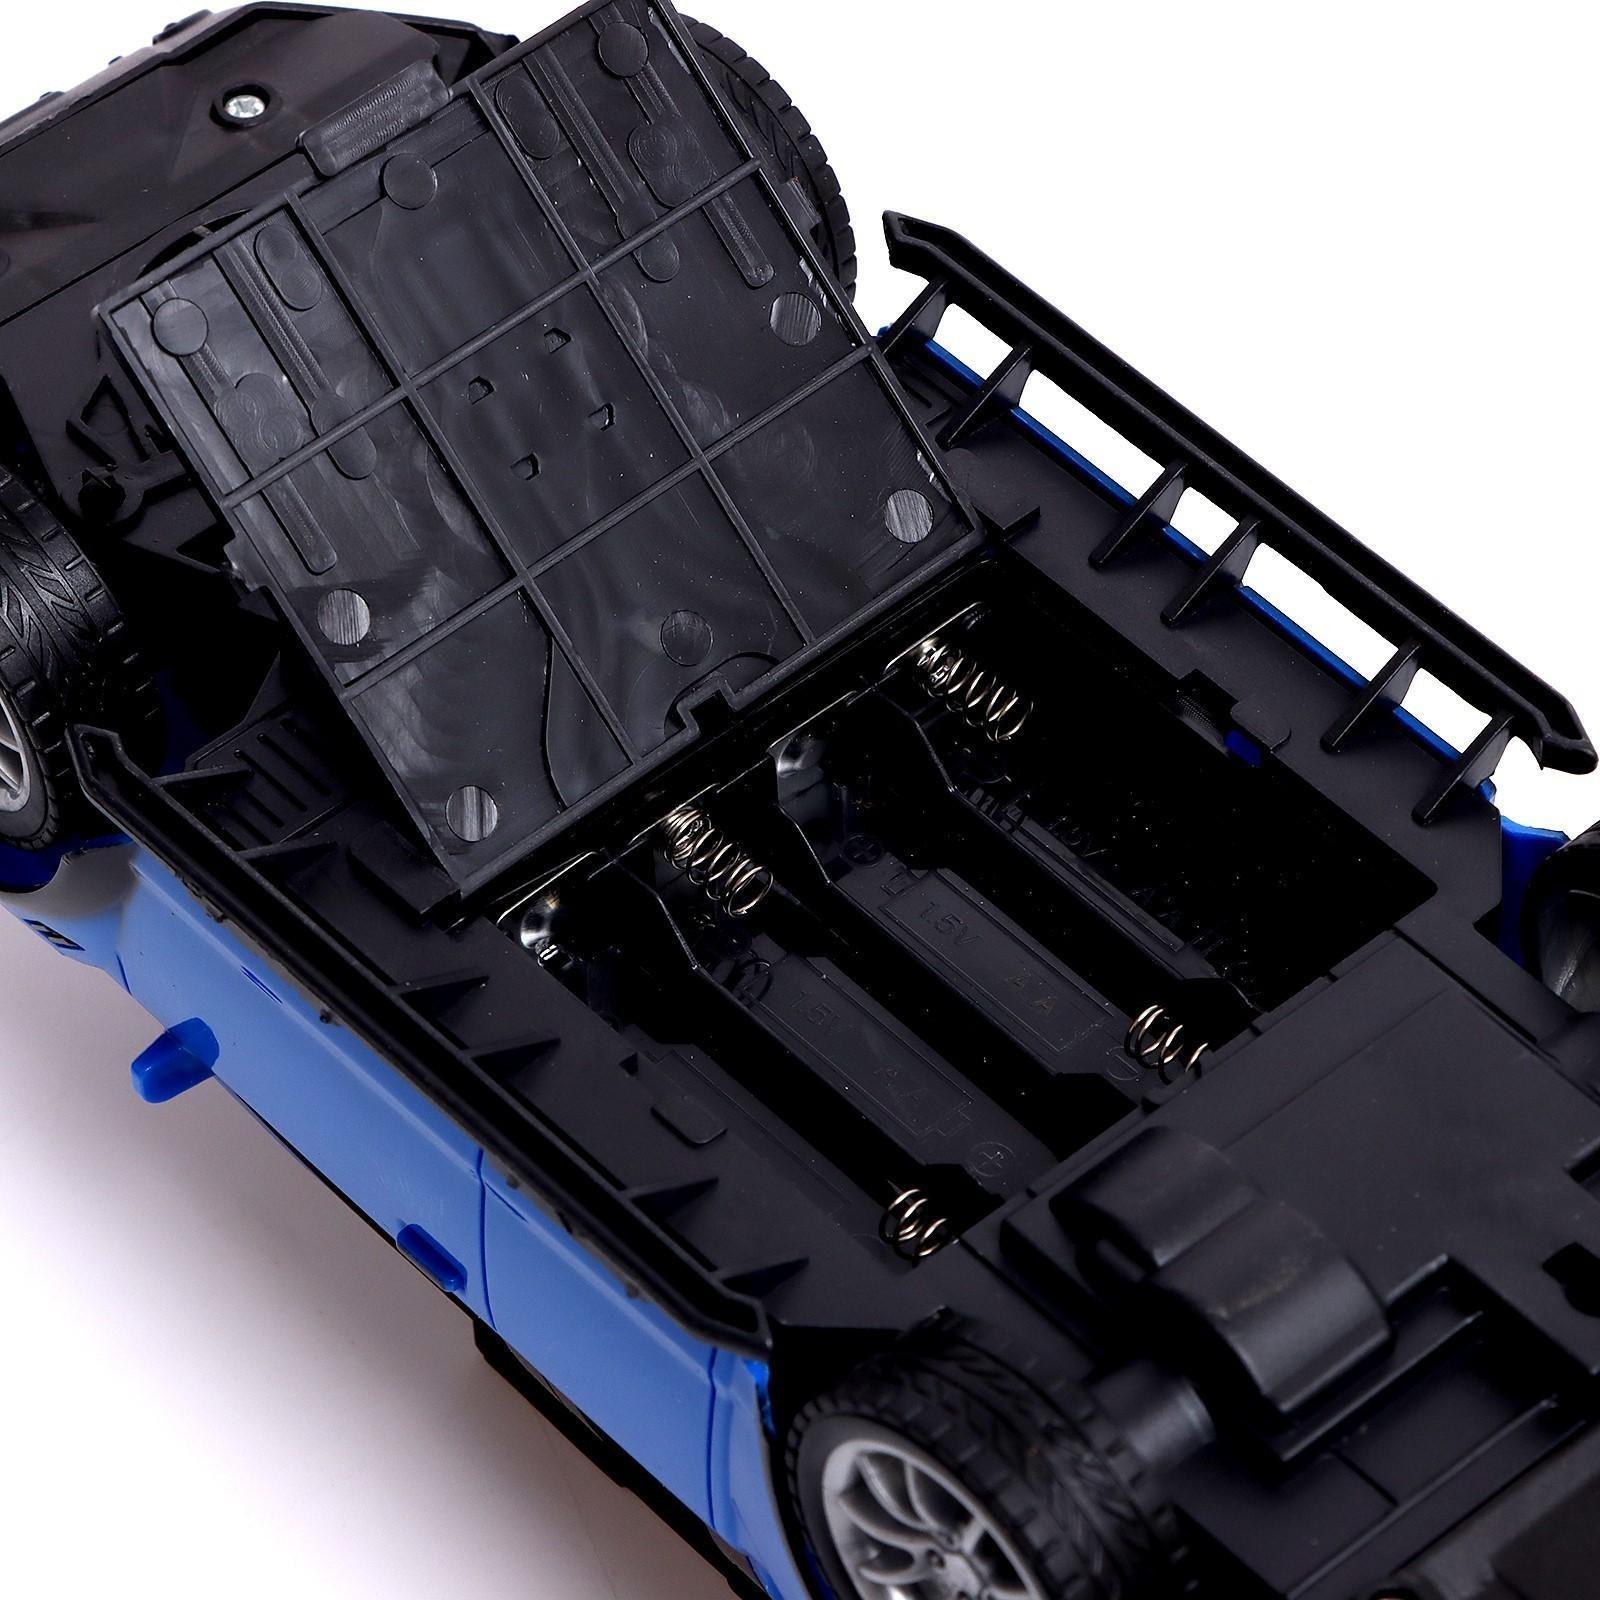 Машина радиоуправляемая RACE, 1:16, педали и руль, работает от батареек, цвет синий